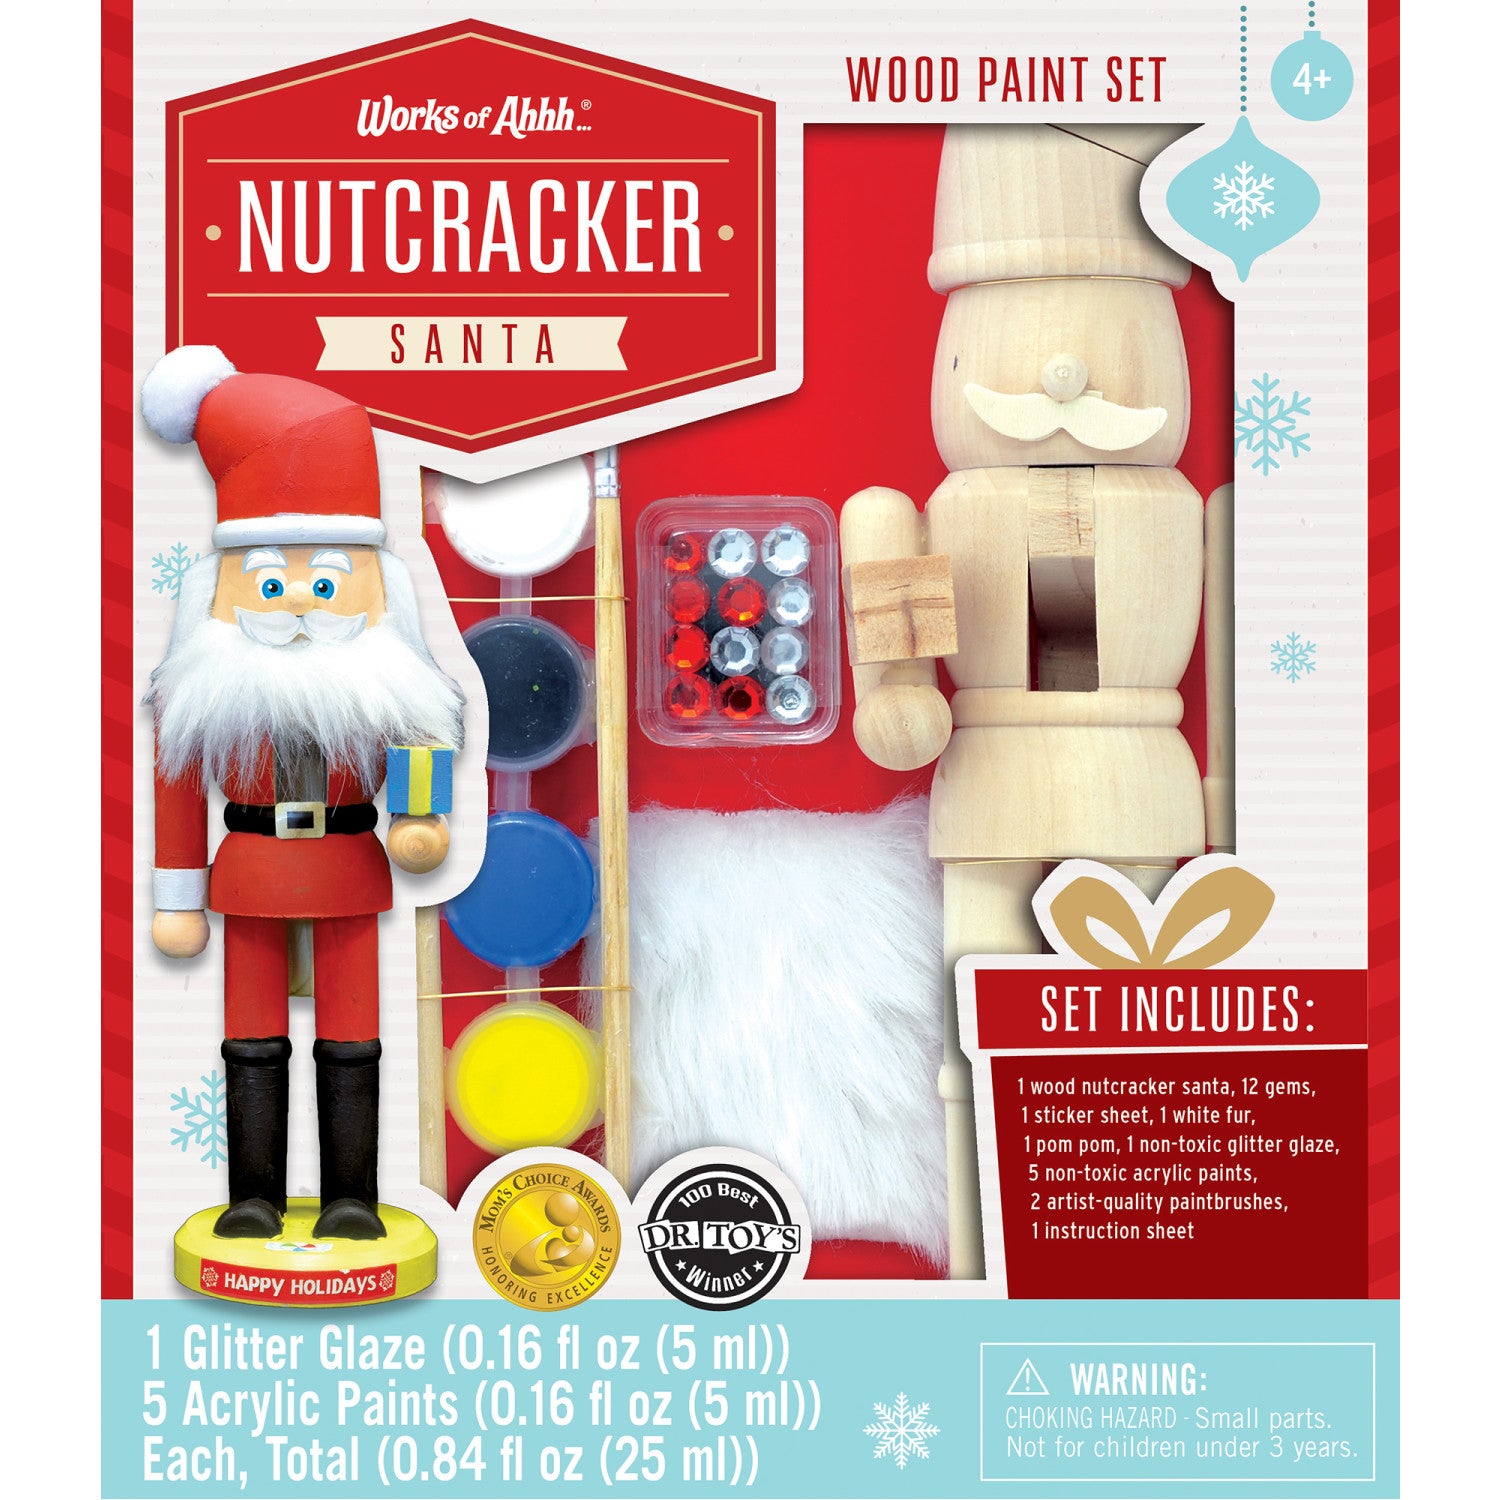 Nutcracker Santa Wood Paint Set